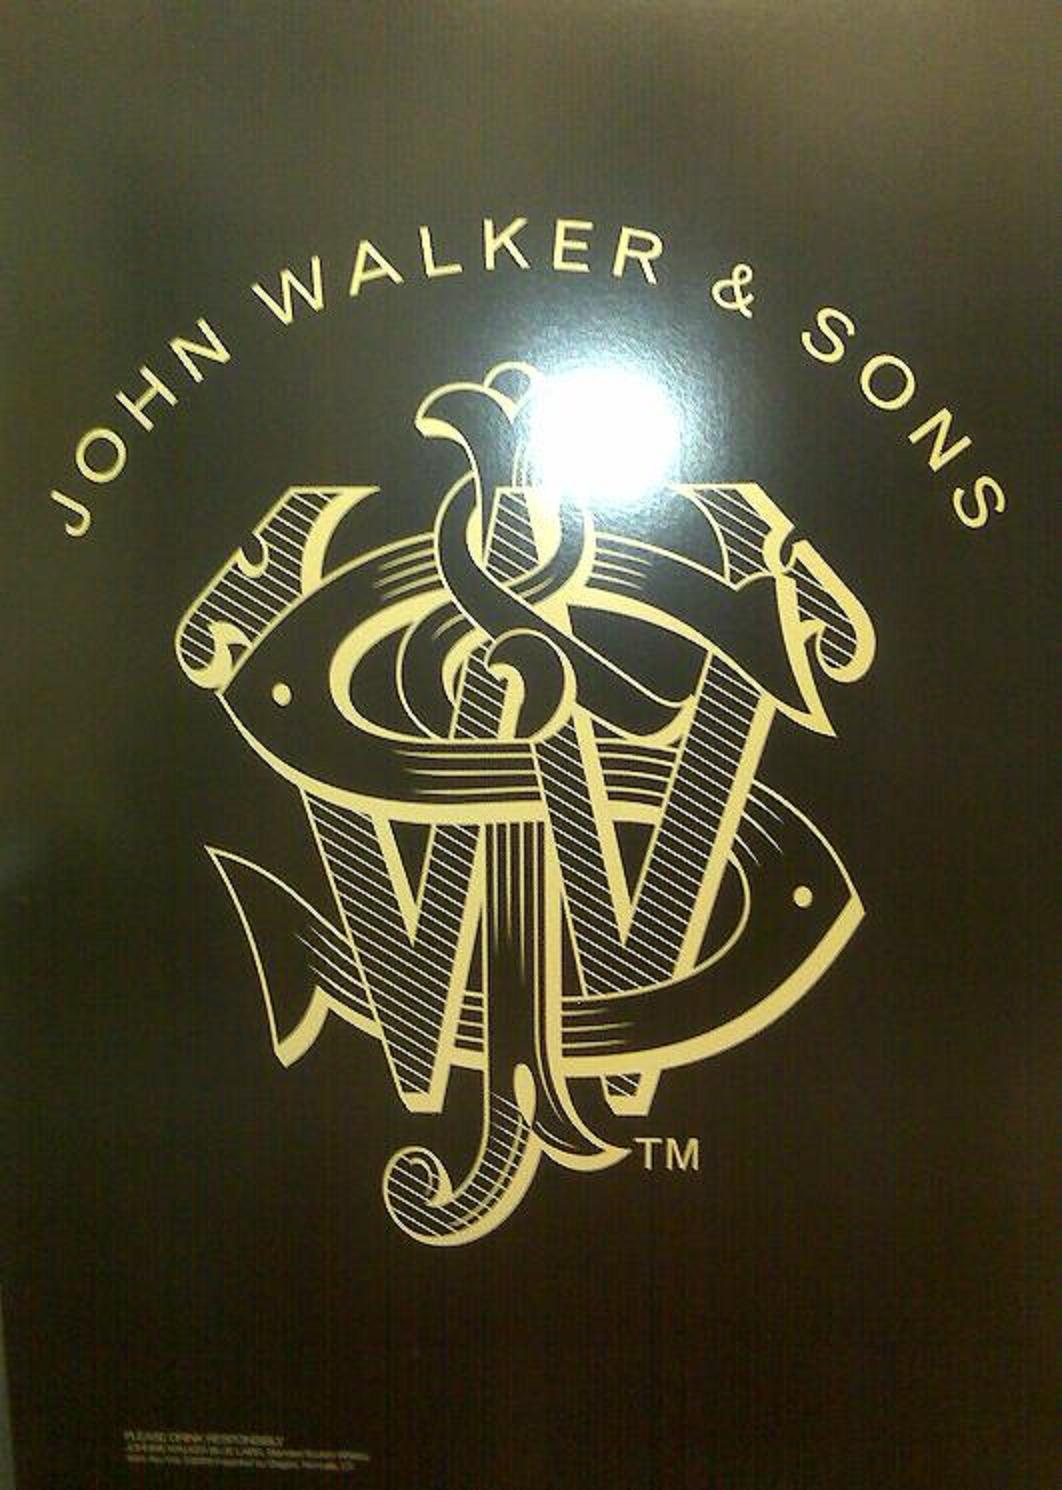 Johnny Walker ad.